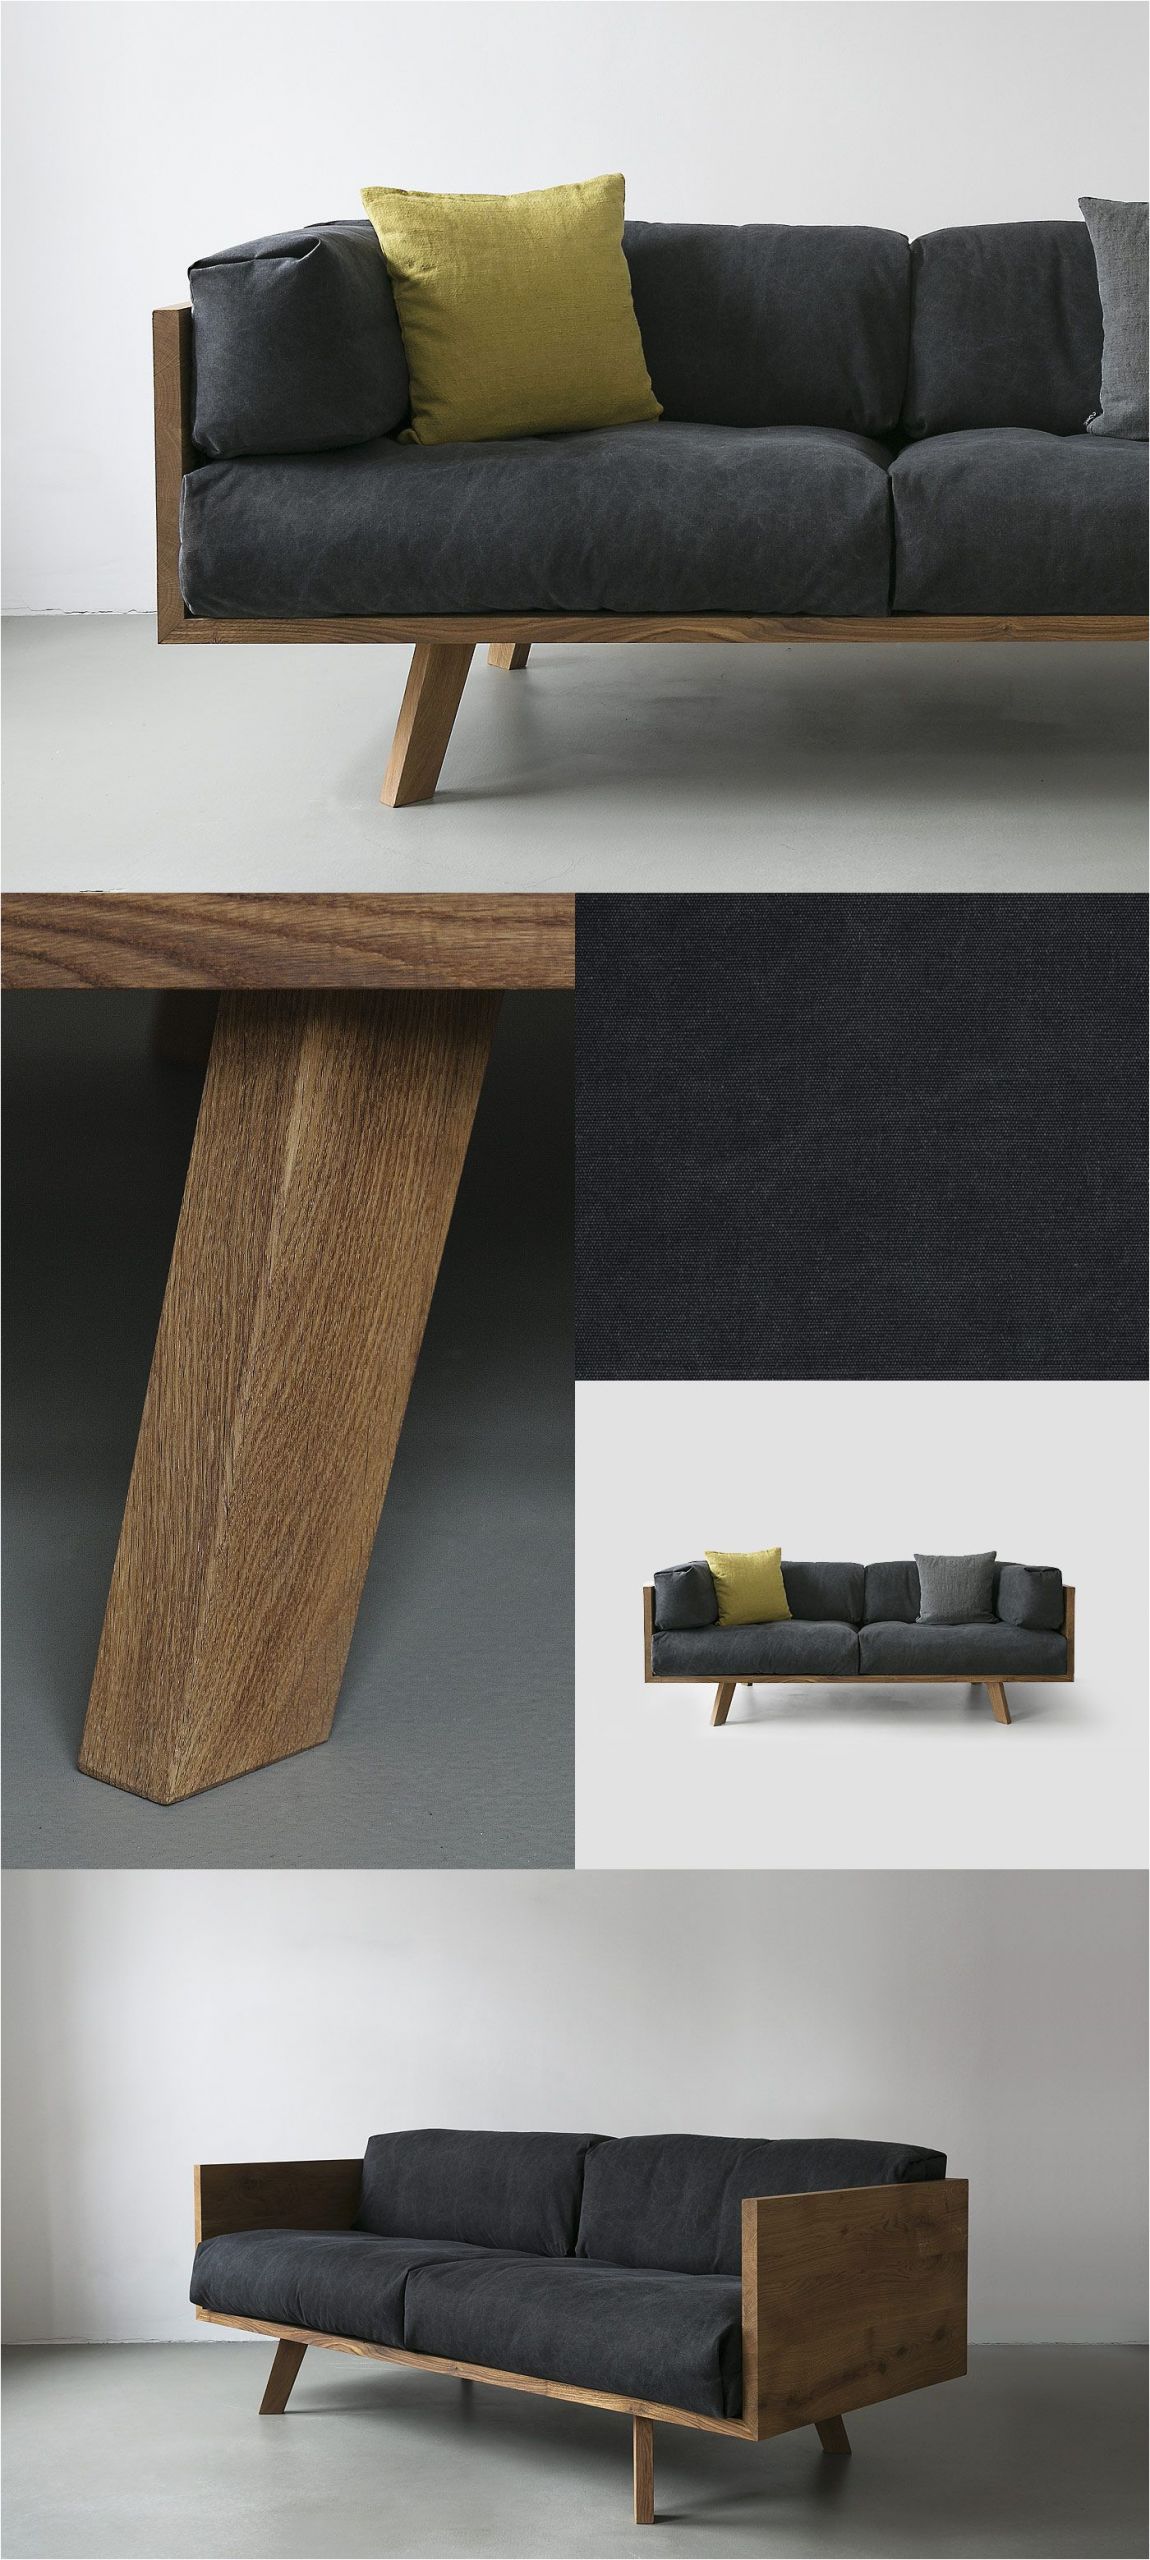 Wedding sofa Design Diy Furniture I Möbel Selber Bauen I Couch sofa Daybed I